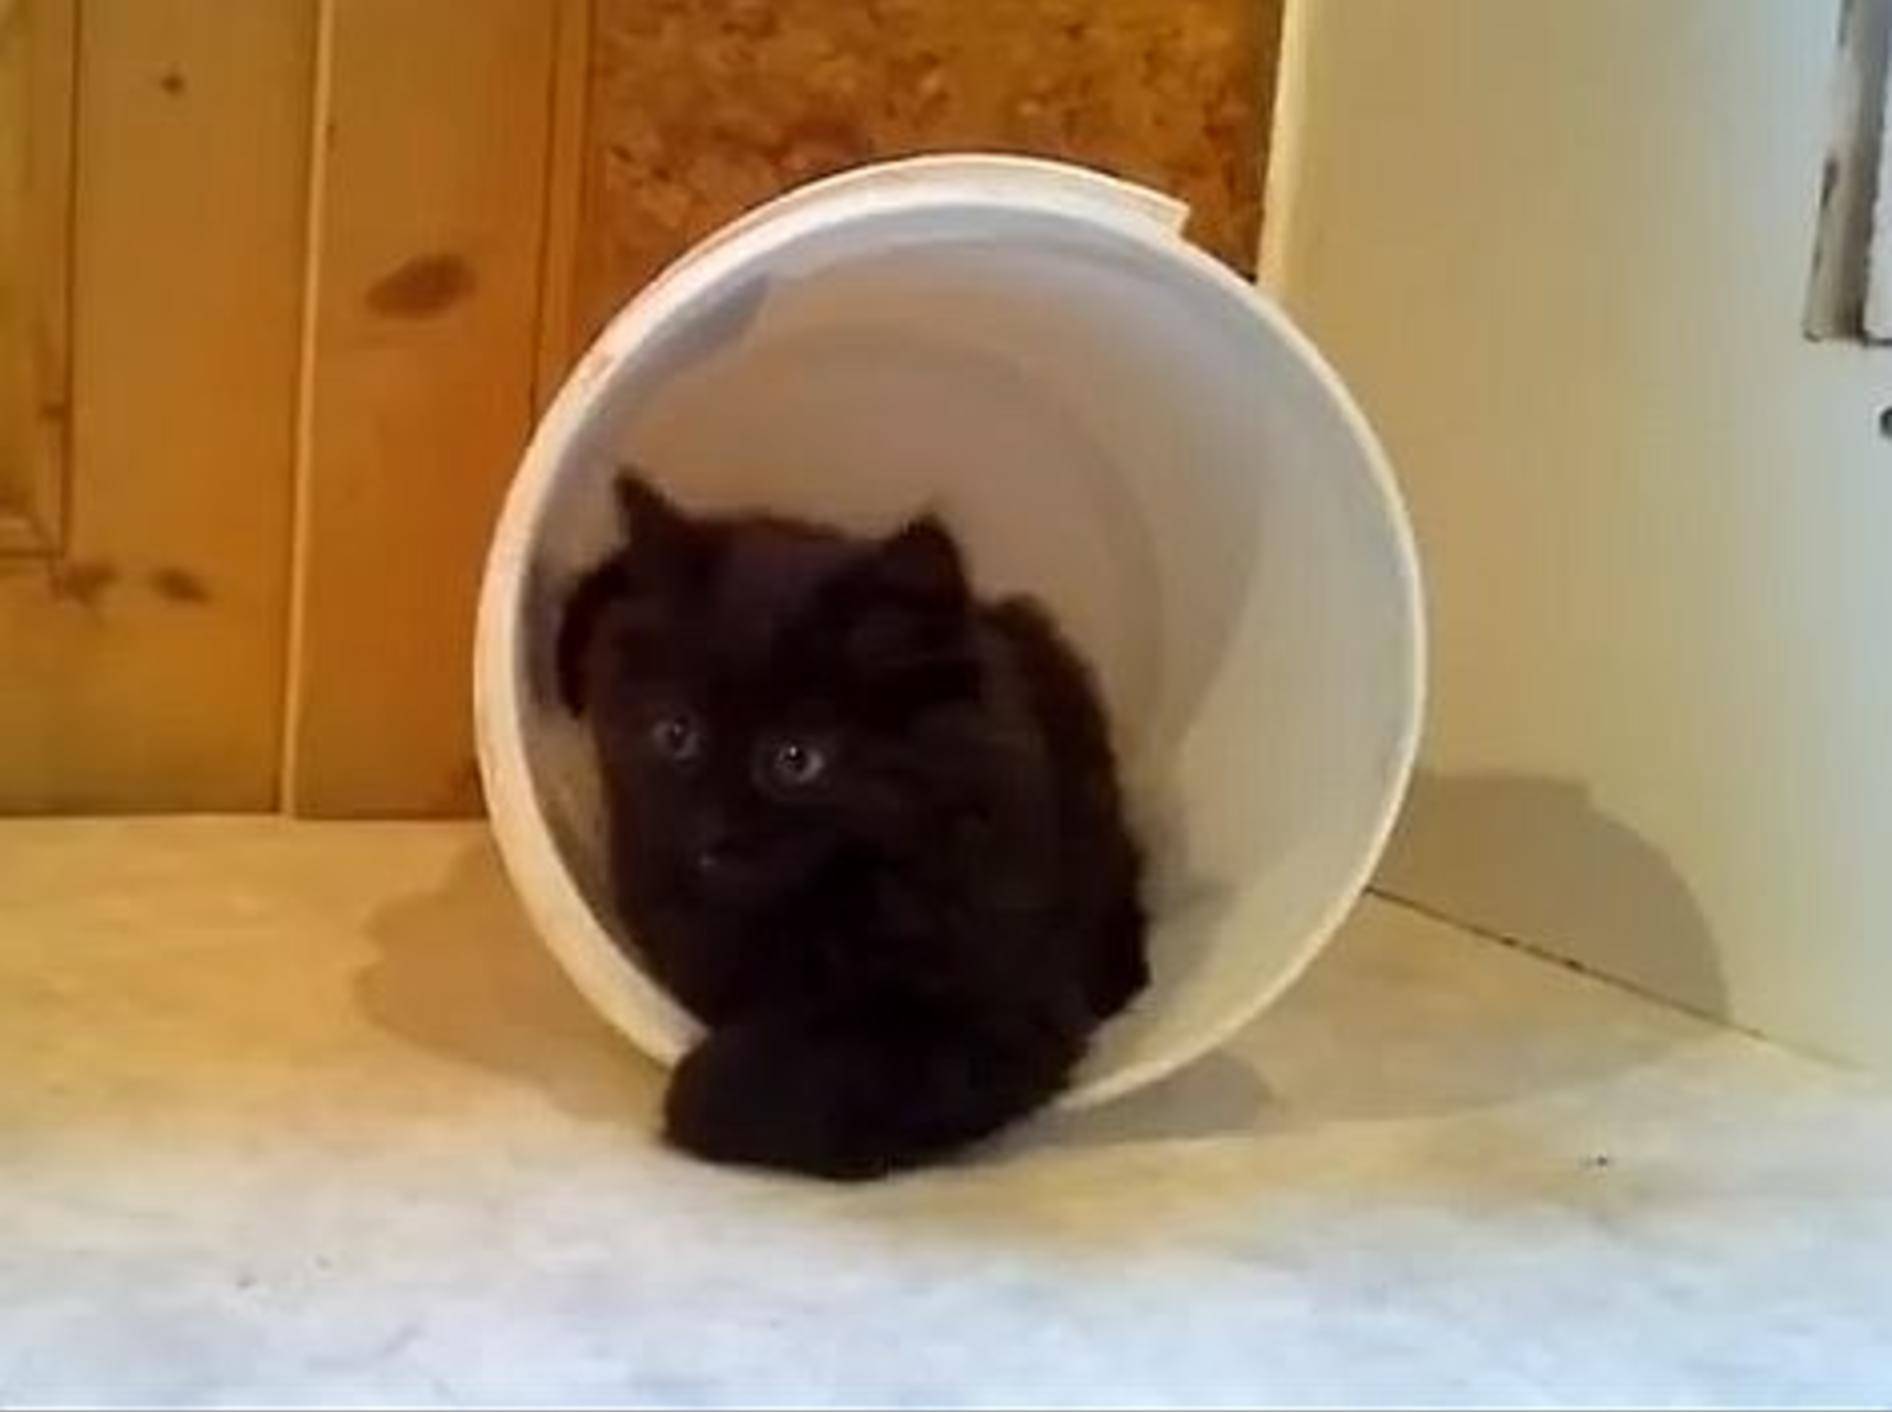 Katzenbaby spielt im Eimer: "Das macht Spaß!!!" – Bild: Youtube / Mirjam Kaiser